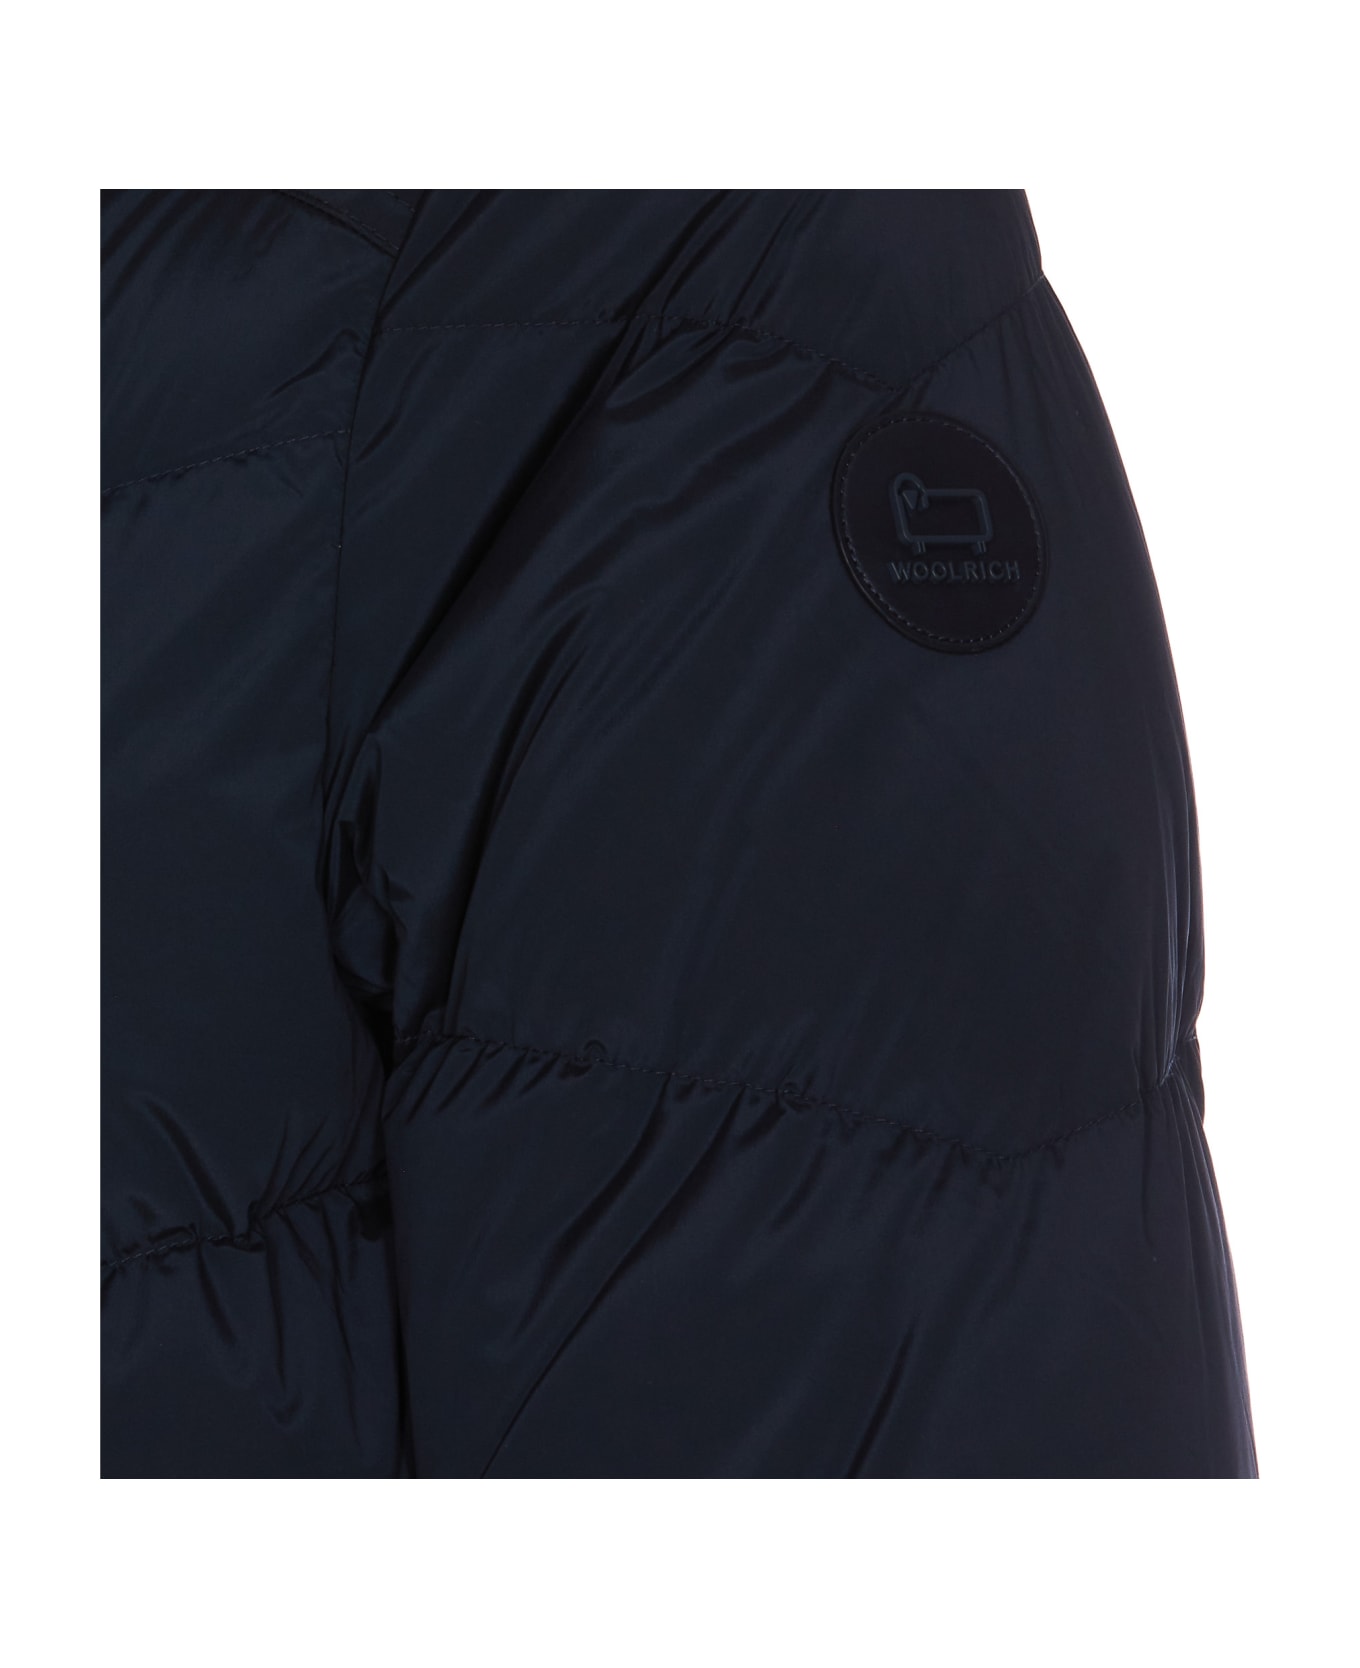 Woolrich Premium Down Jacket - 3989